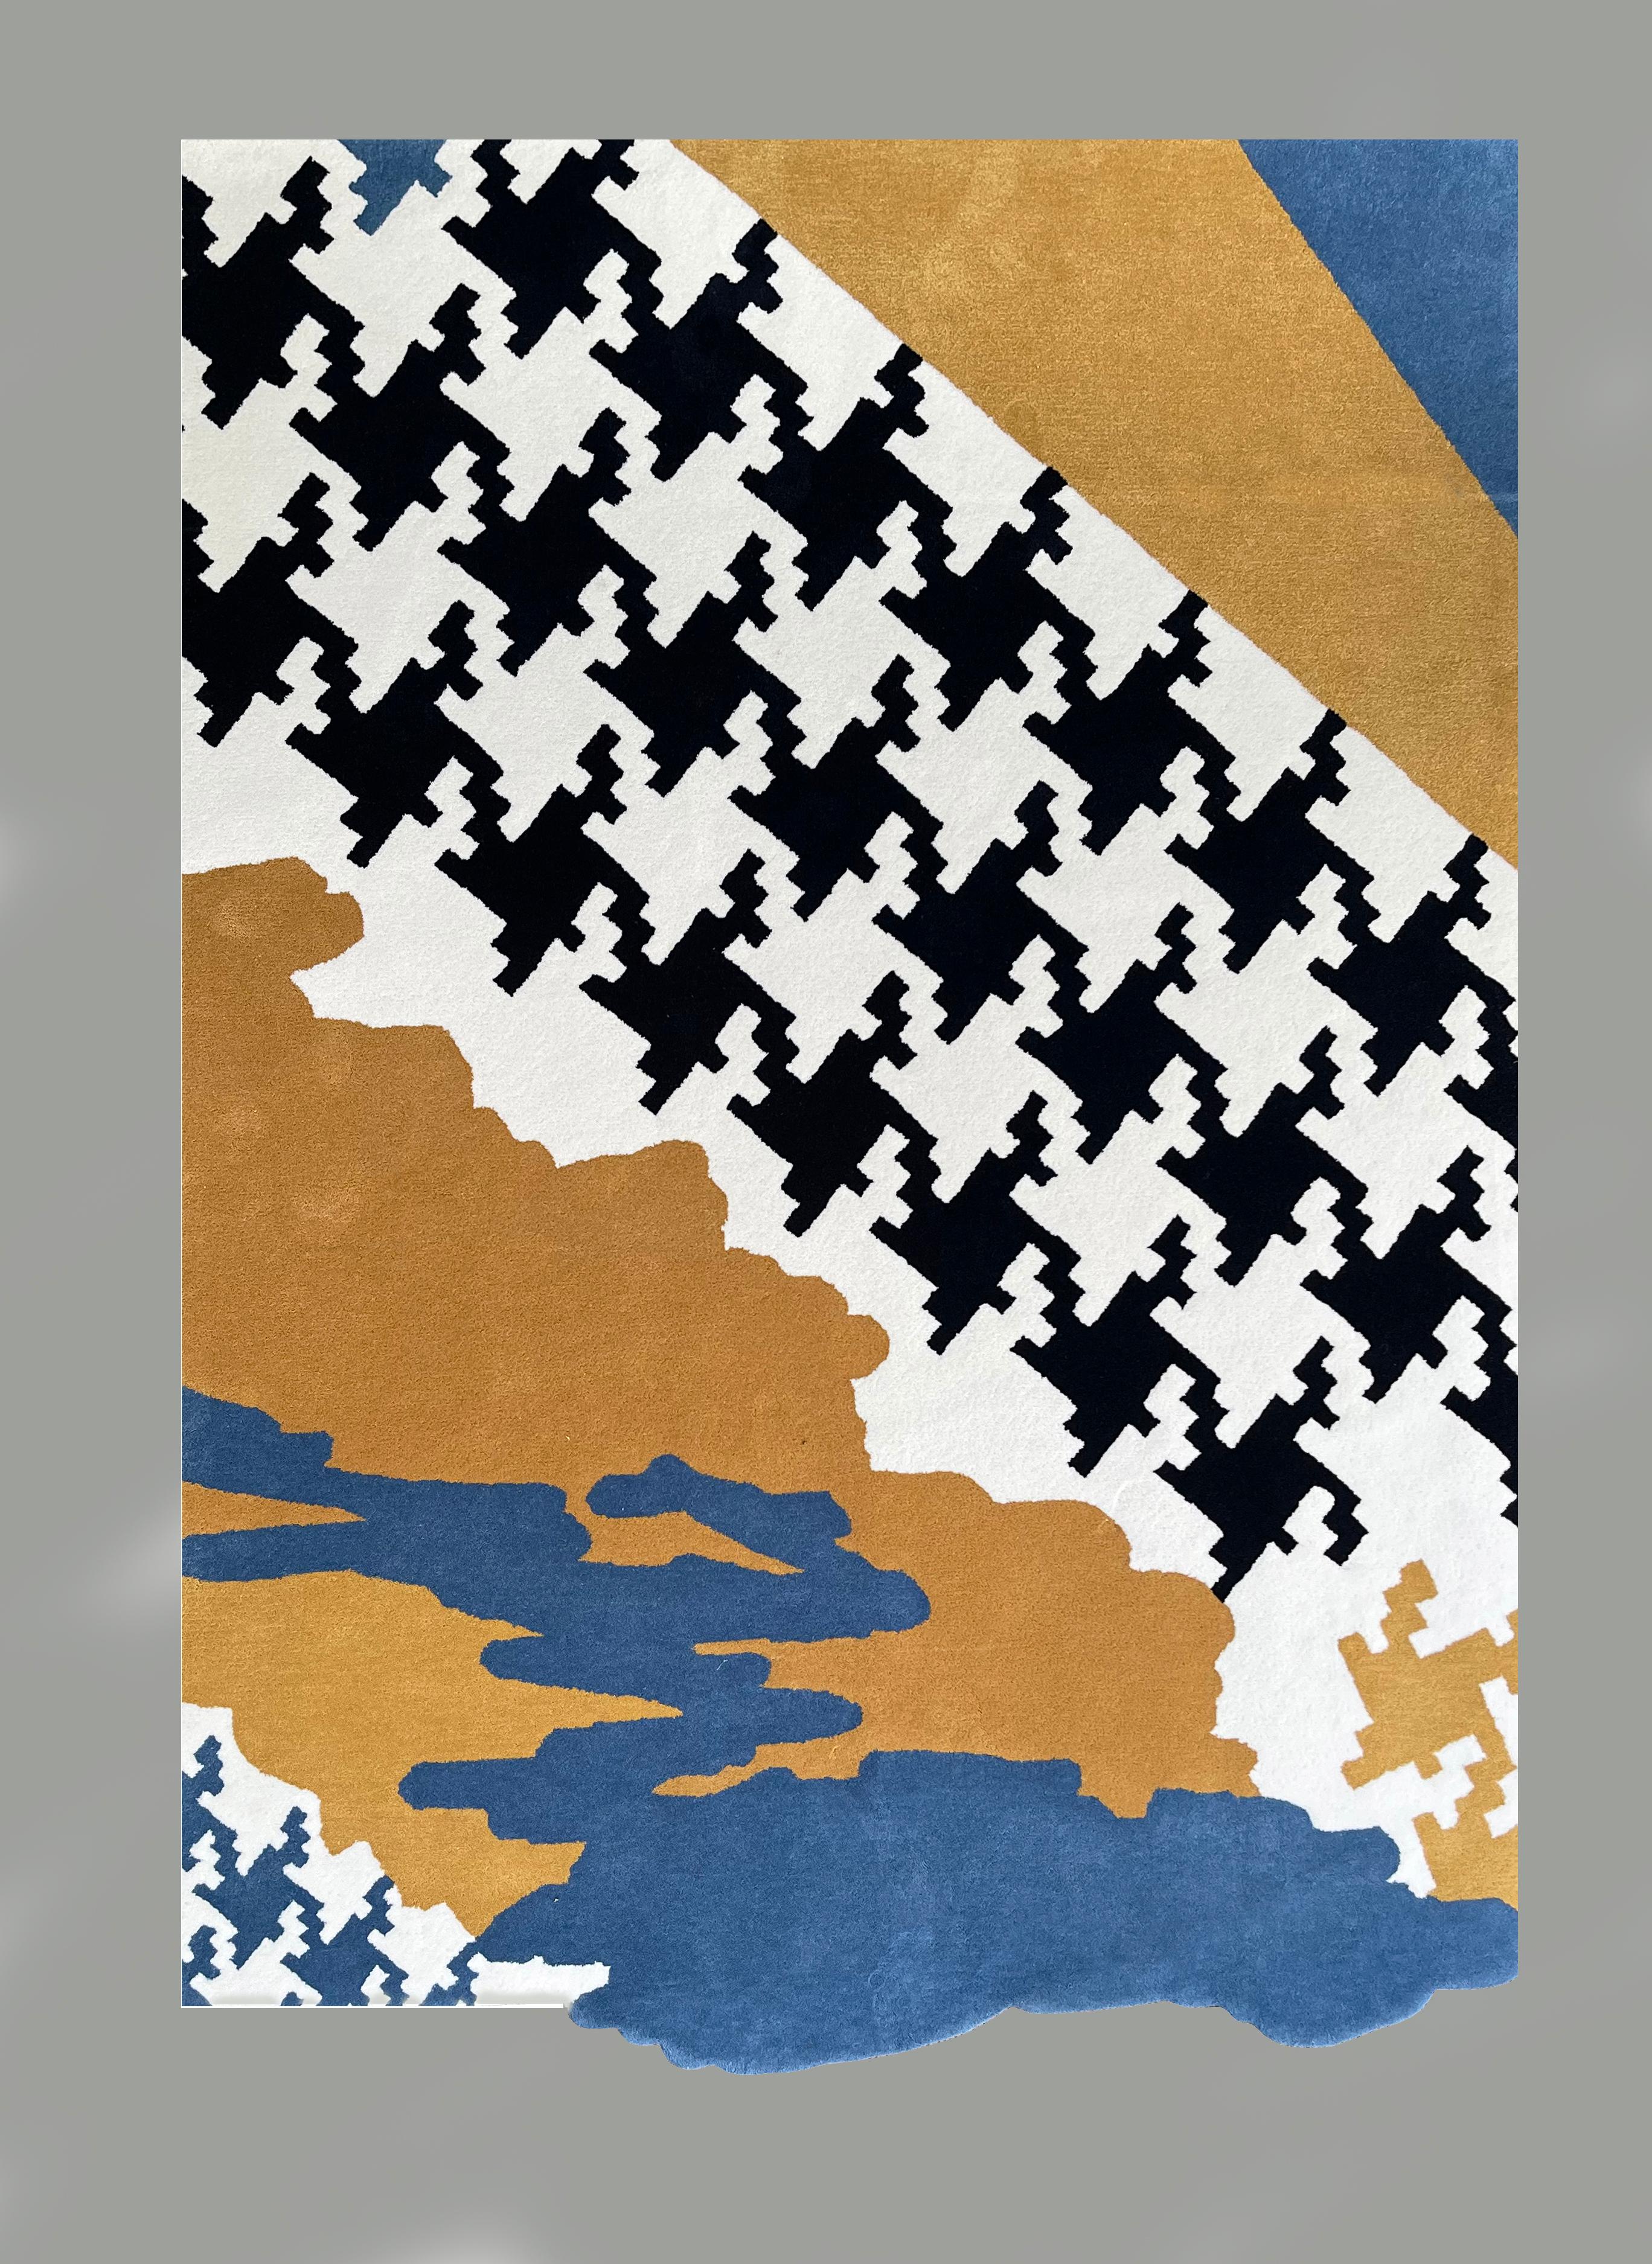 Veröffentlichung eines neuen handgefertigten Kunstteppichs aus neuseeländischer Wolle. Sie entspricht dem Urban-Ethno-Trend. Der Teppich wurde nach einem Originalentwurf der berühmten ukrainischen Künstlerin Kristina Gaidamaka entworfen, die